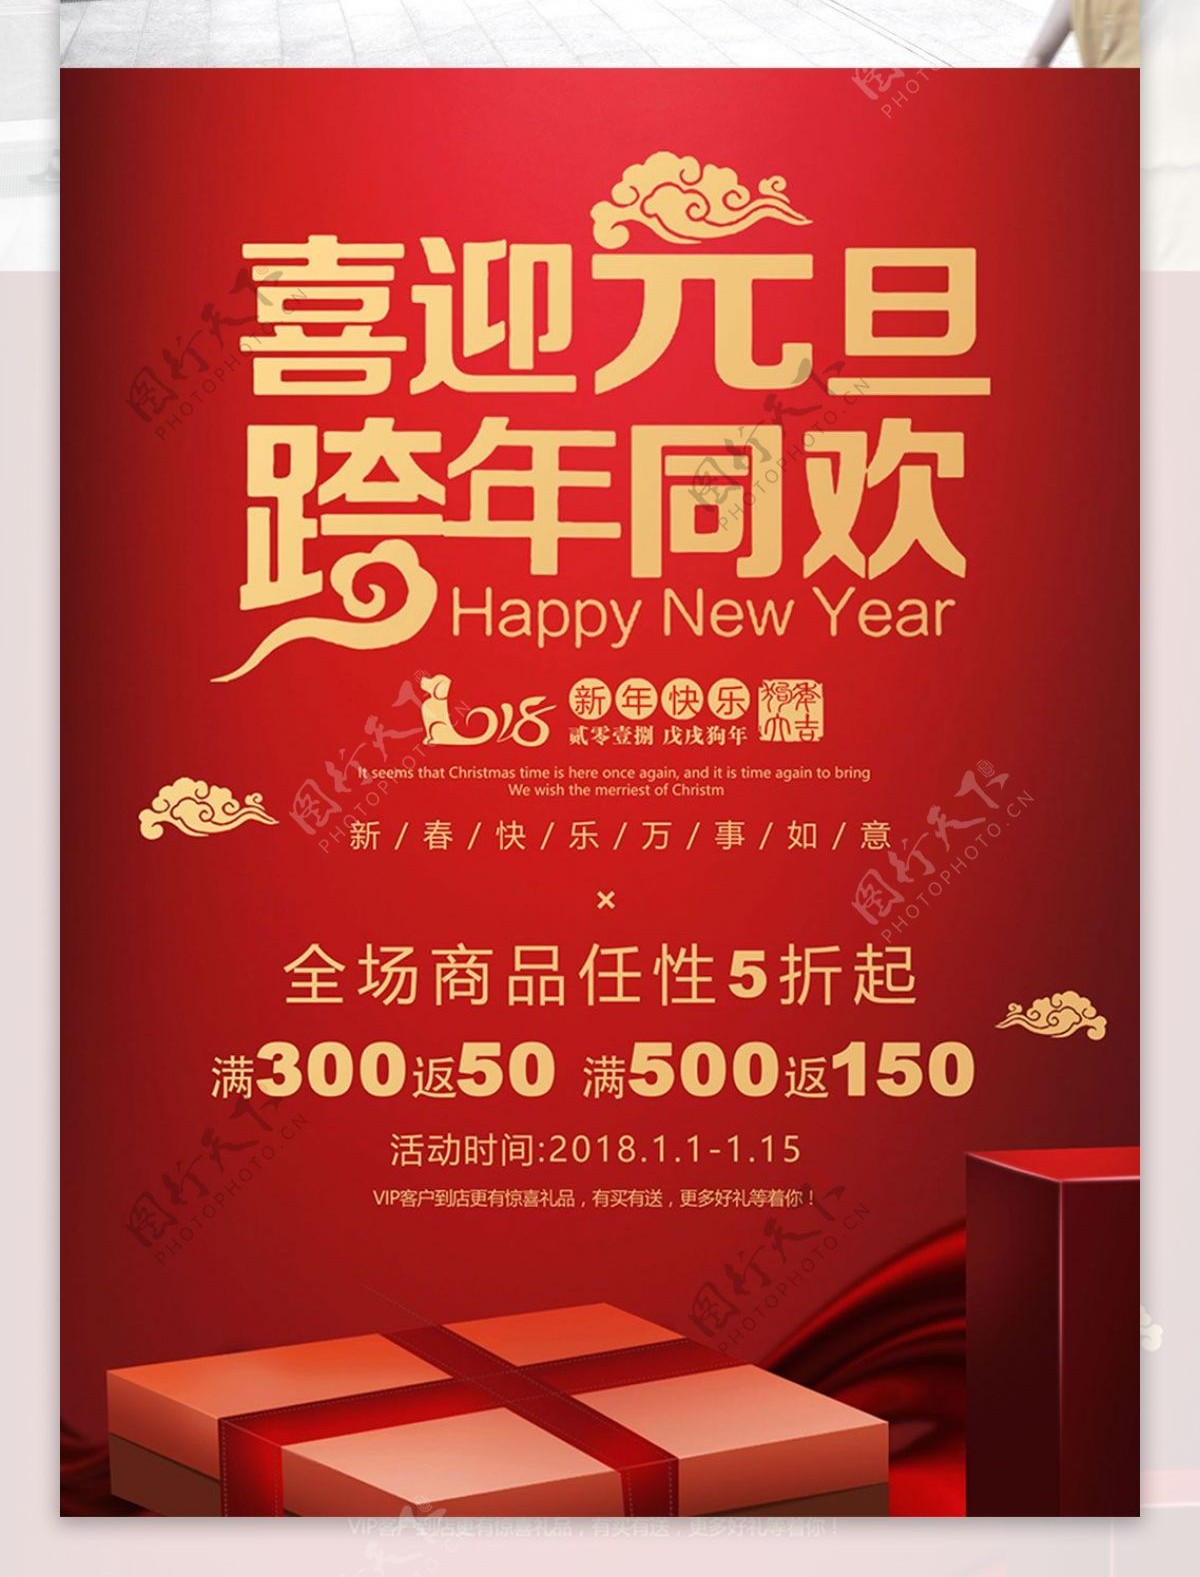 红色喜庆元旦春节促销商业海报设计